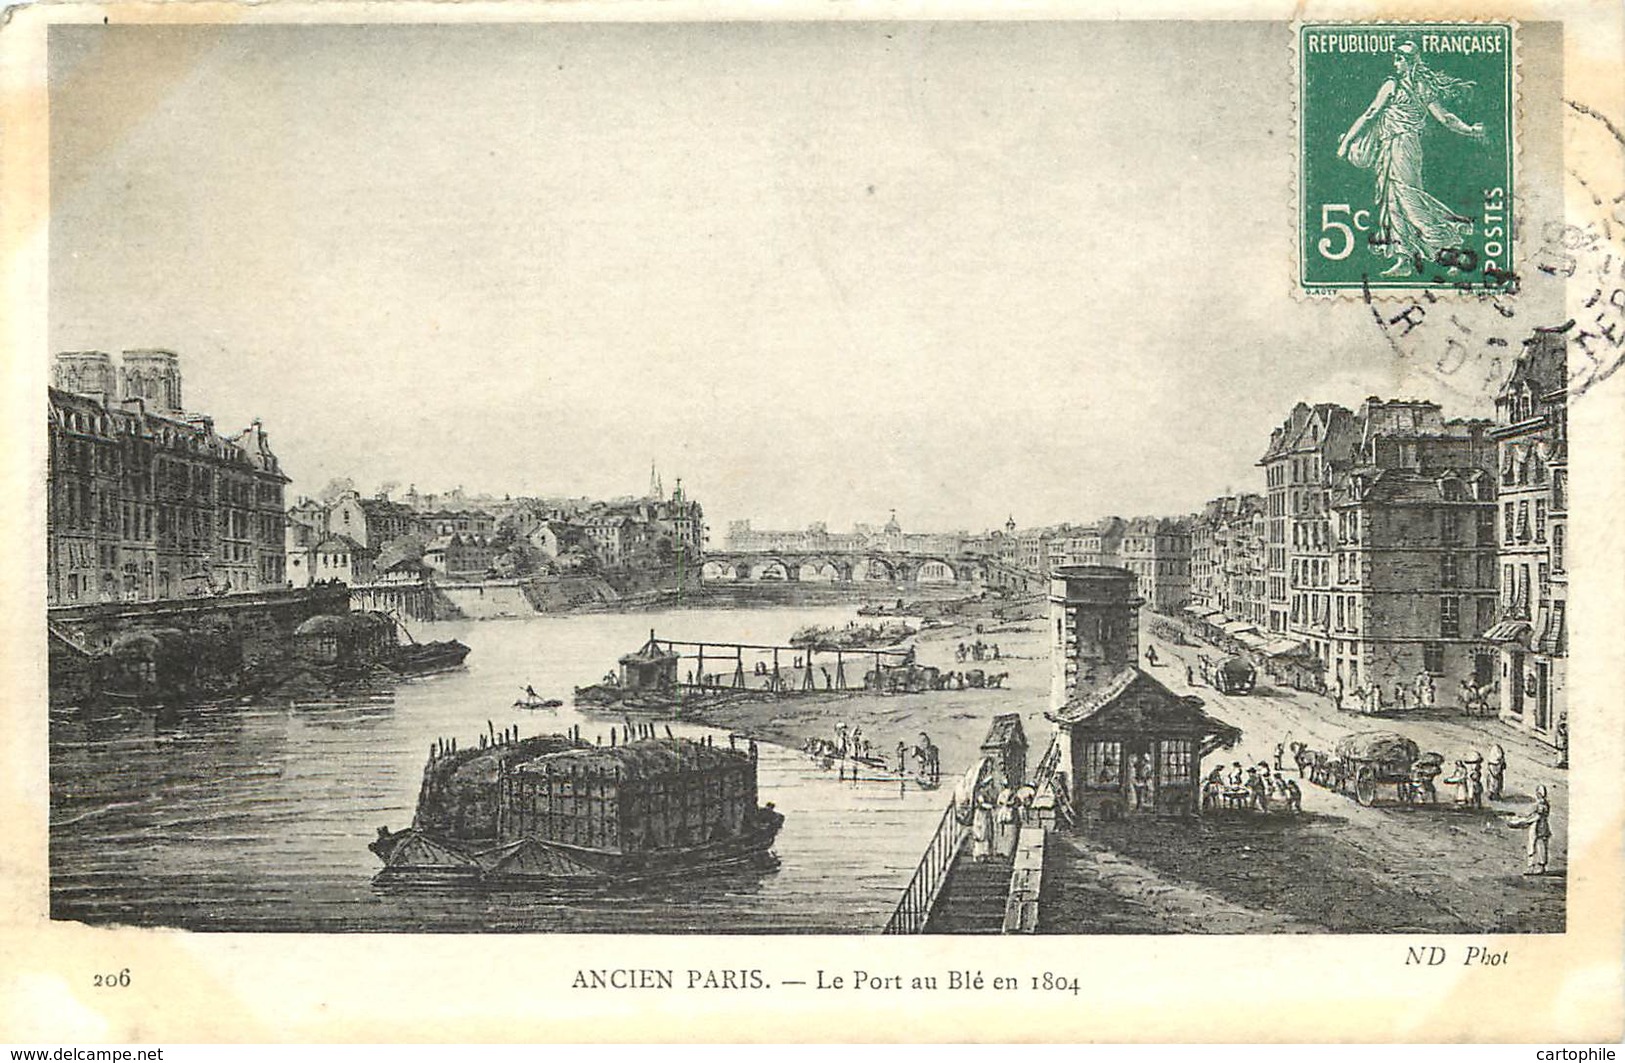 75 - PARIS - Beau lot de 50 cartes postales de l'Ancien Paris - Série ND Photo